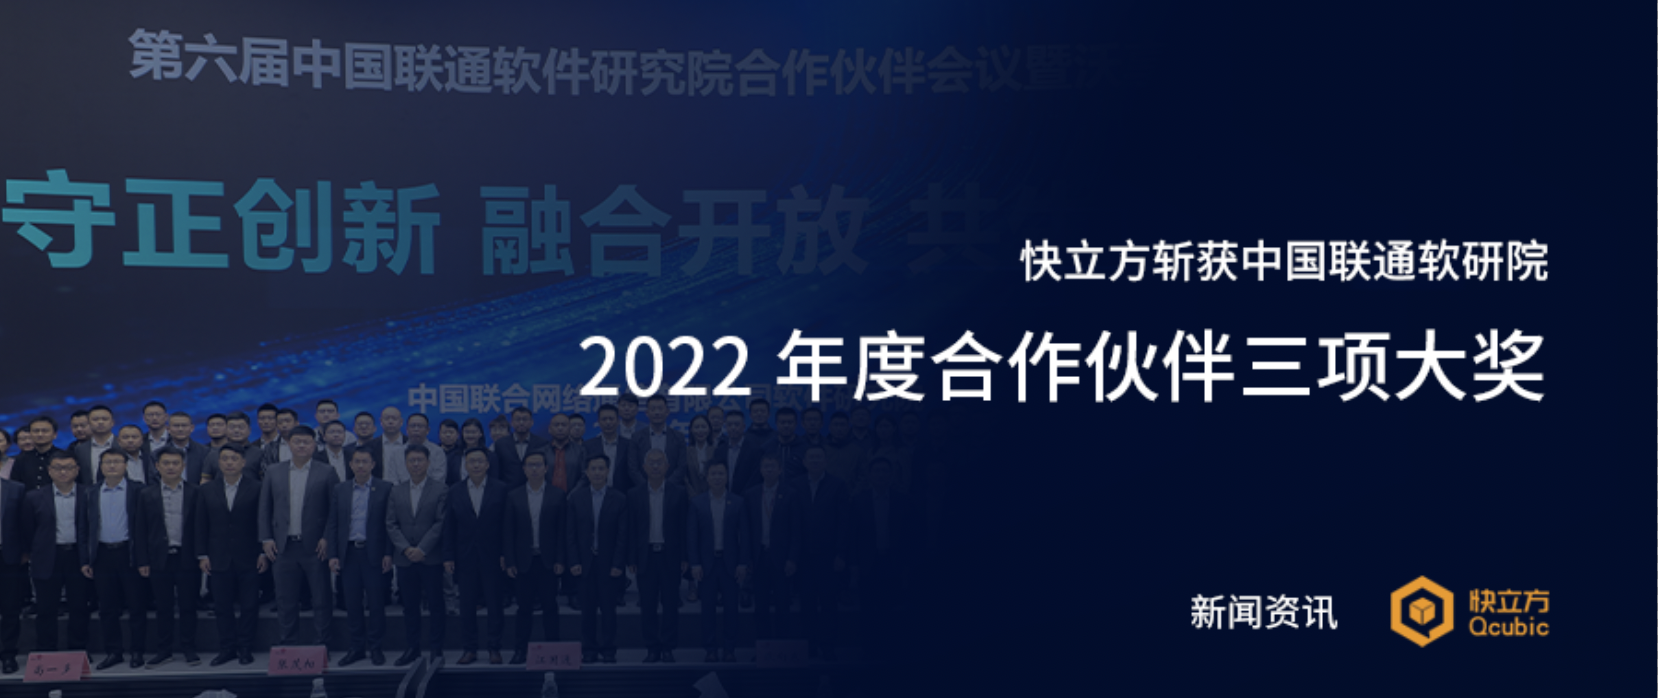 快立方斩获中国联通软研院2022年度合作伙伴三项大奖！